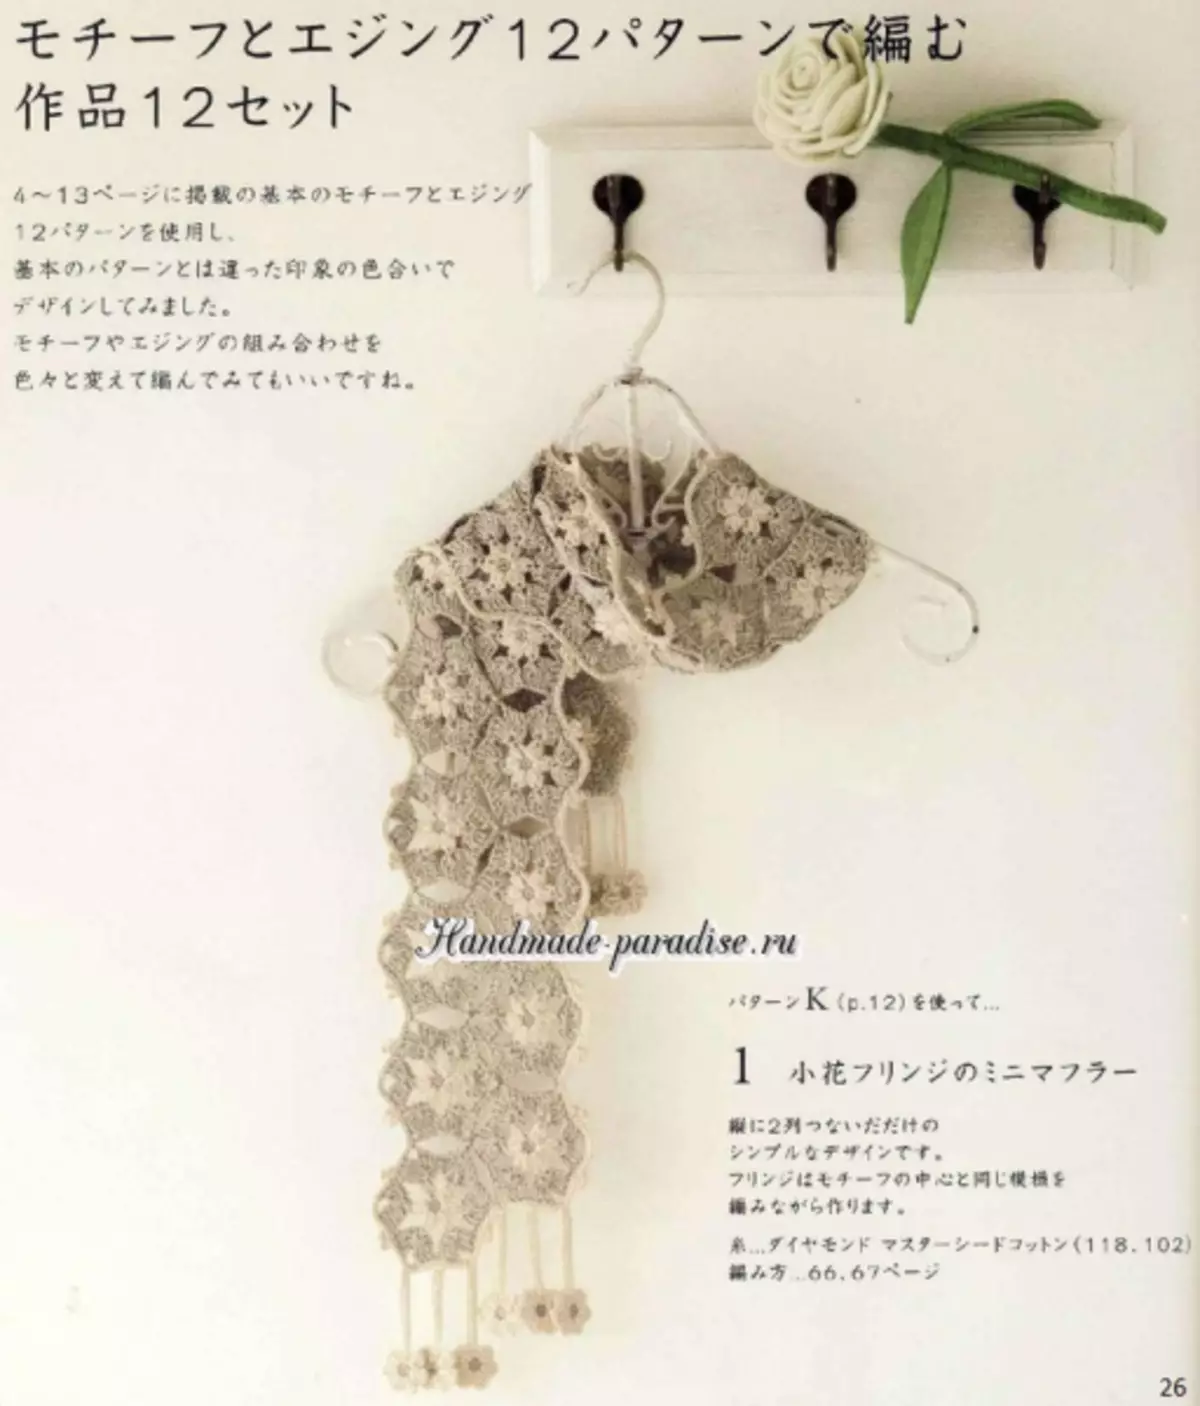 আলংকারিক crochet। জাপানি ম্যাগাজিন